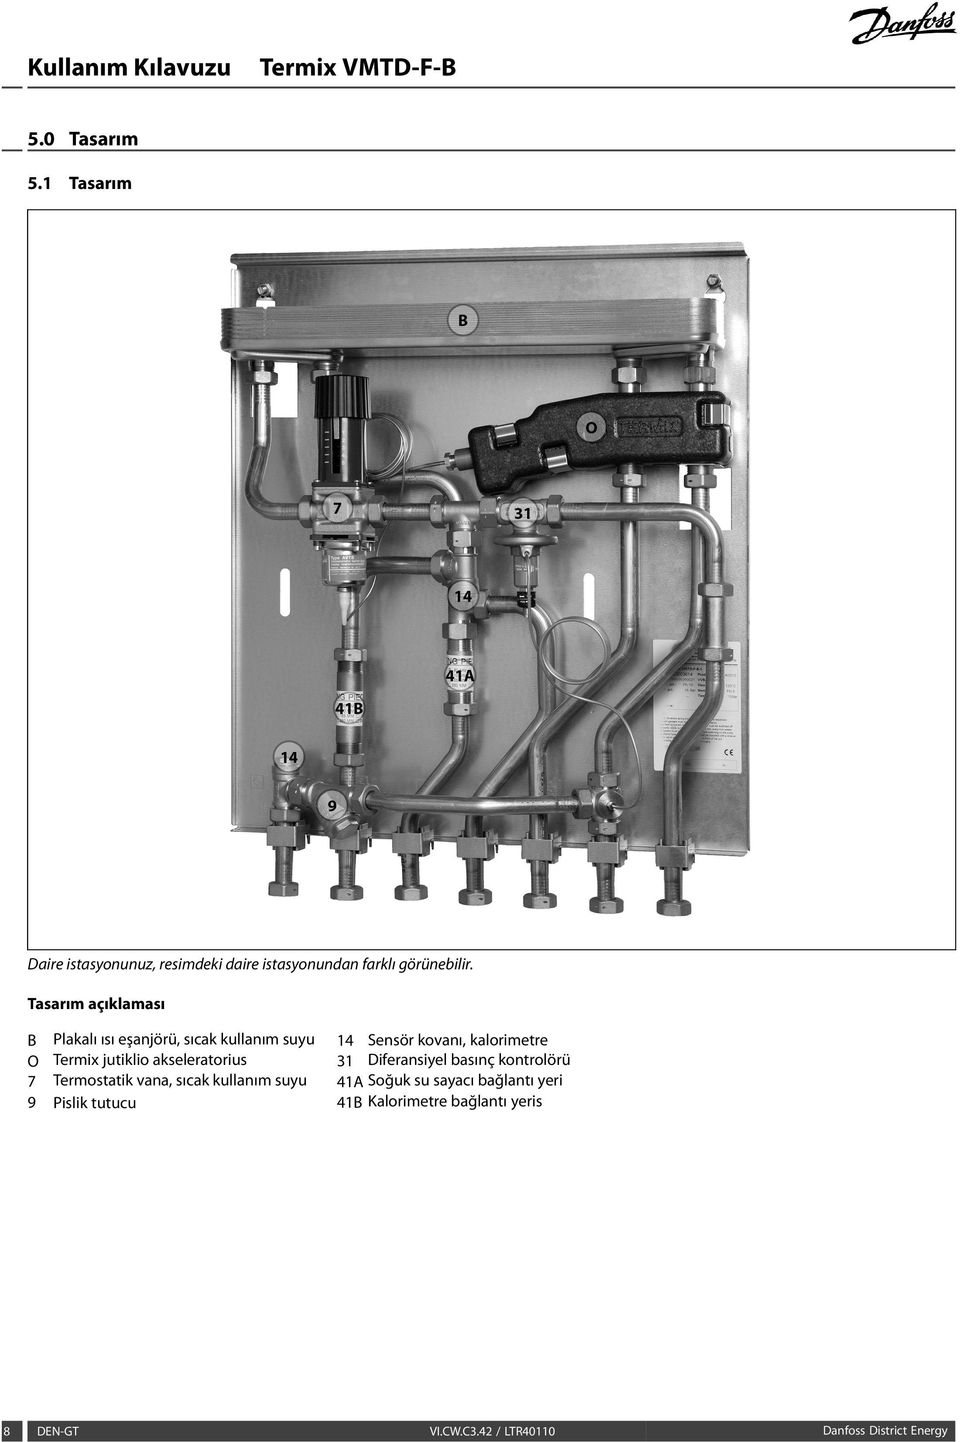 jutiklio akseleratorius 31 Diferansiyel basınç kontrolörü 7 Termostatik vana, sıcak kullanım suyu 41A Soğuk